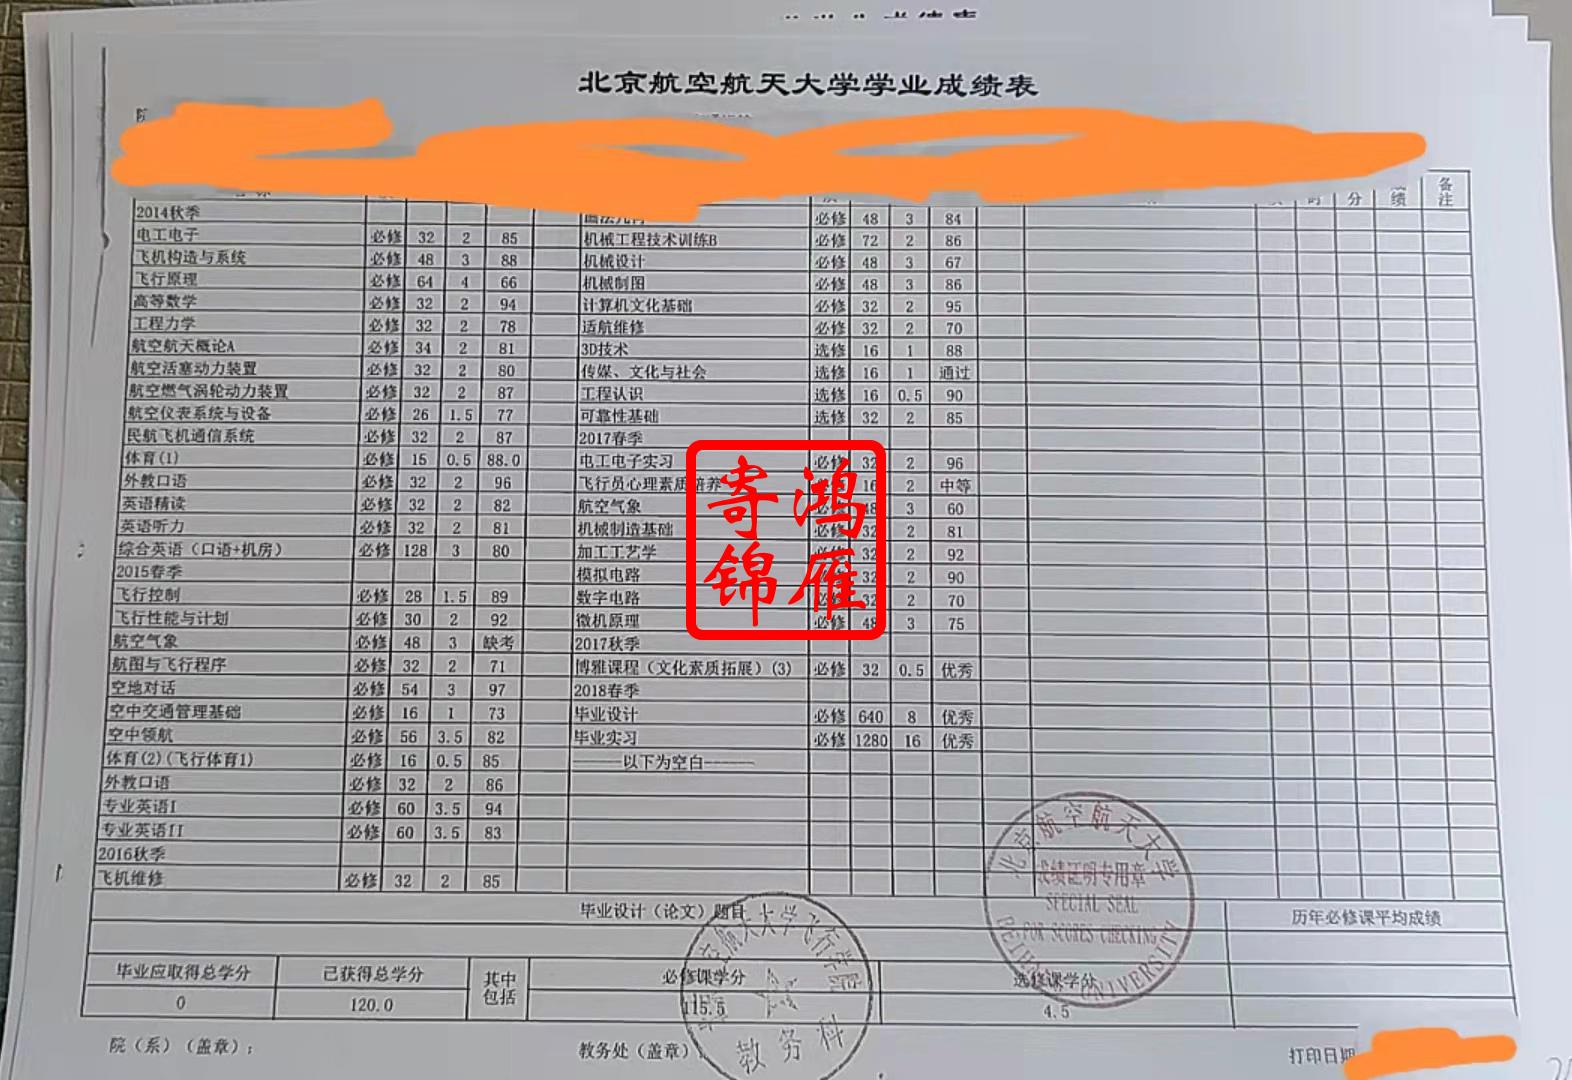 北京航空航天大学中文成绩单打印案例.jpg